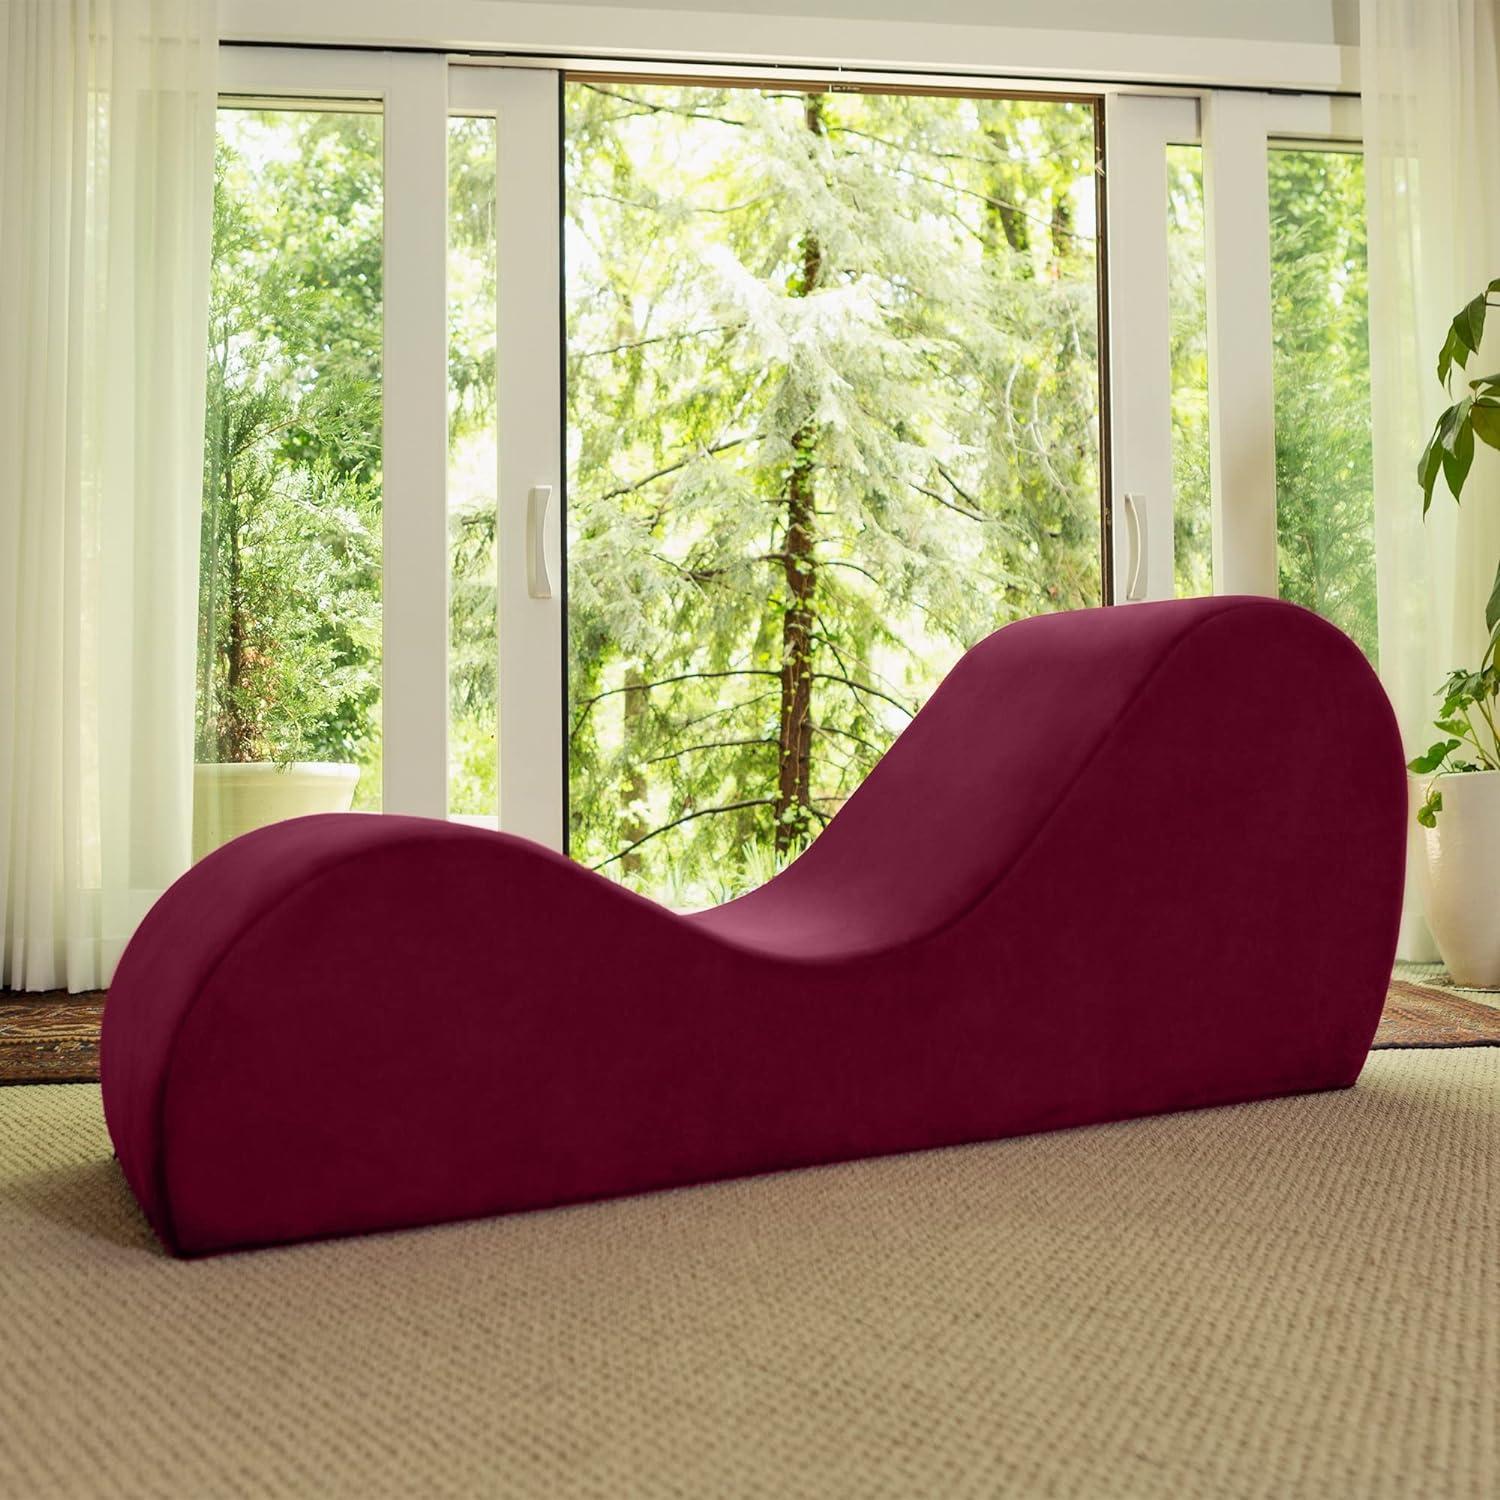 Avana Modern Red Microvelvet Armless Yoga Chaise Lounger, 60 in